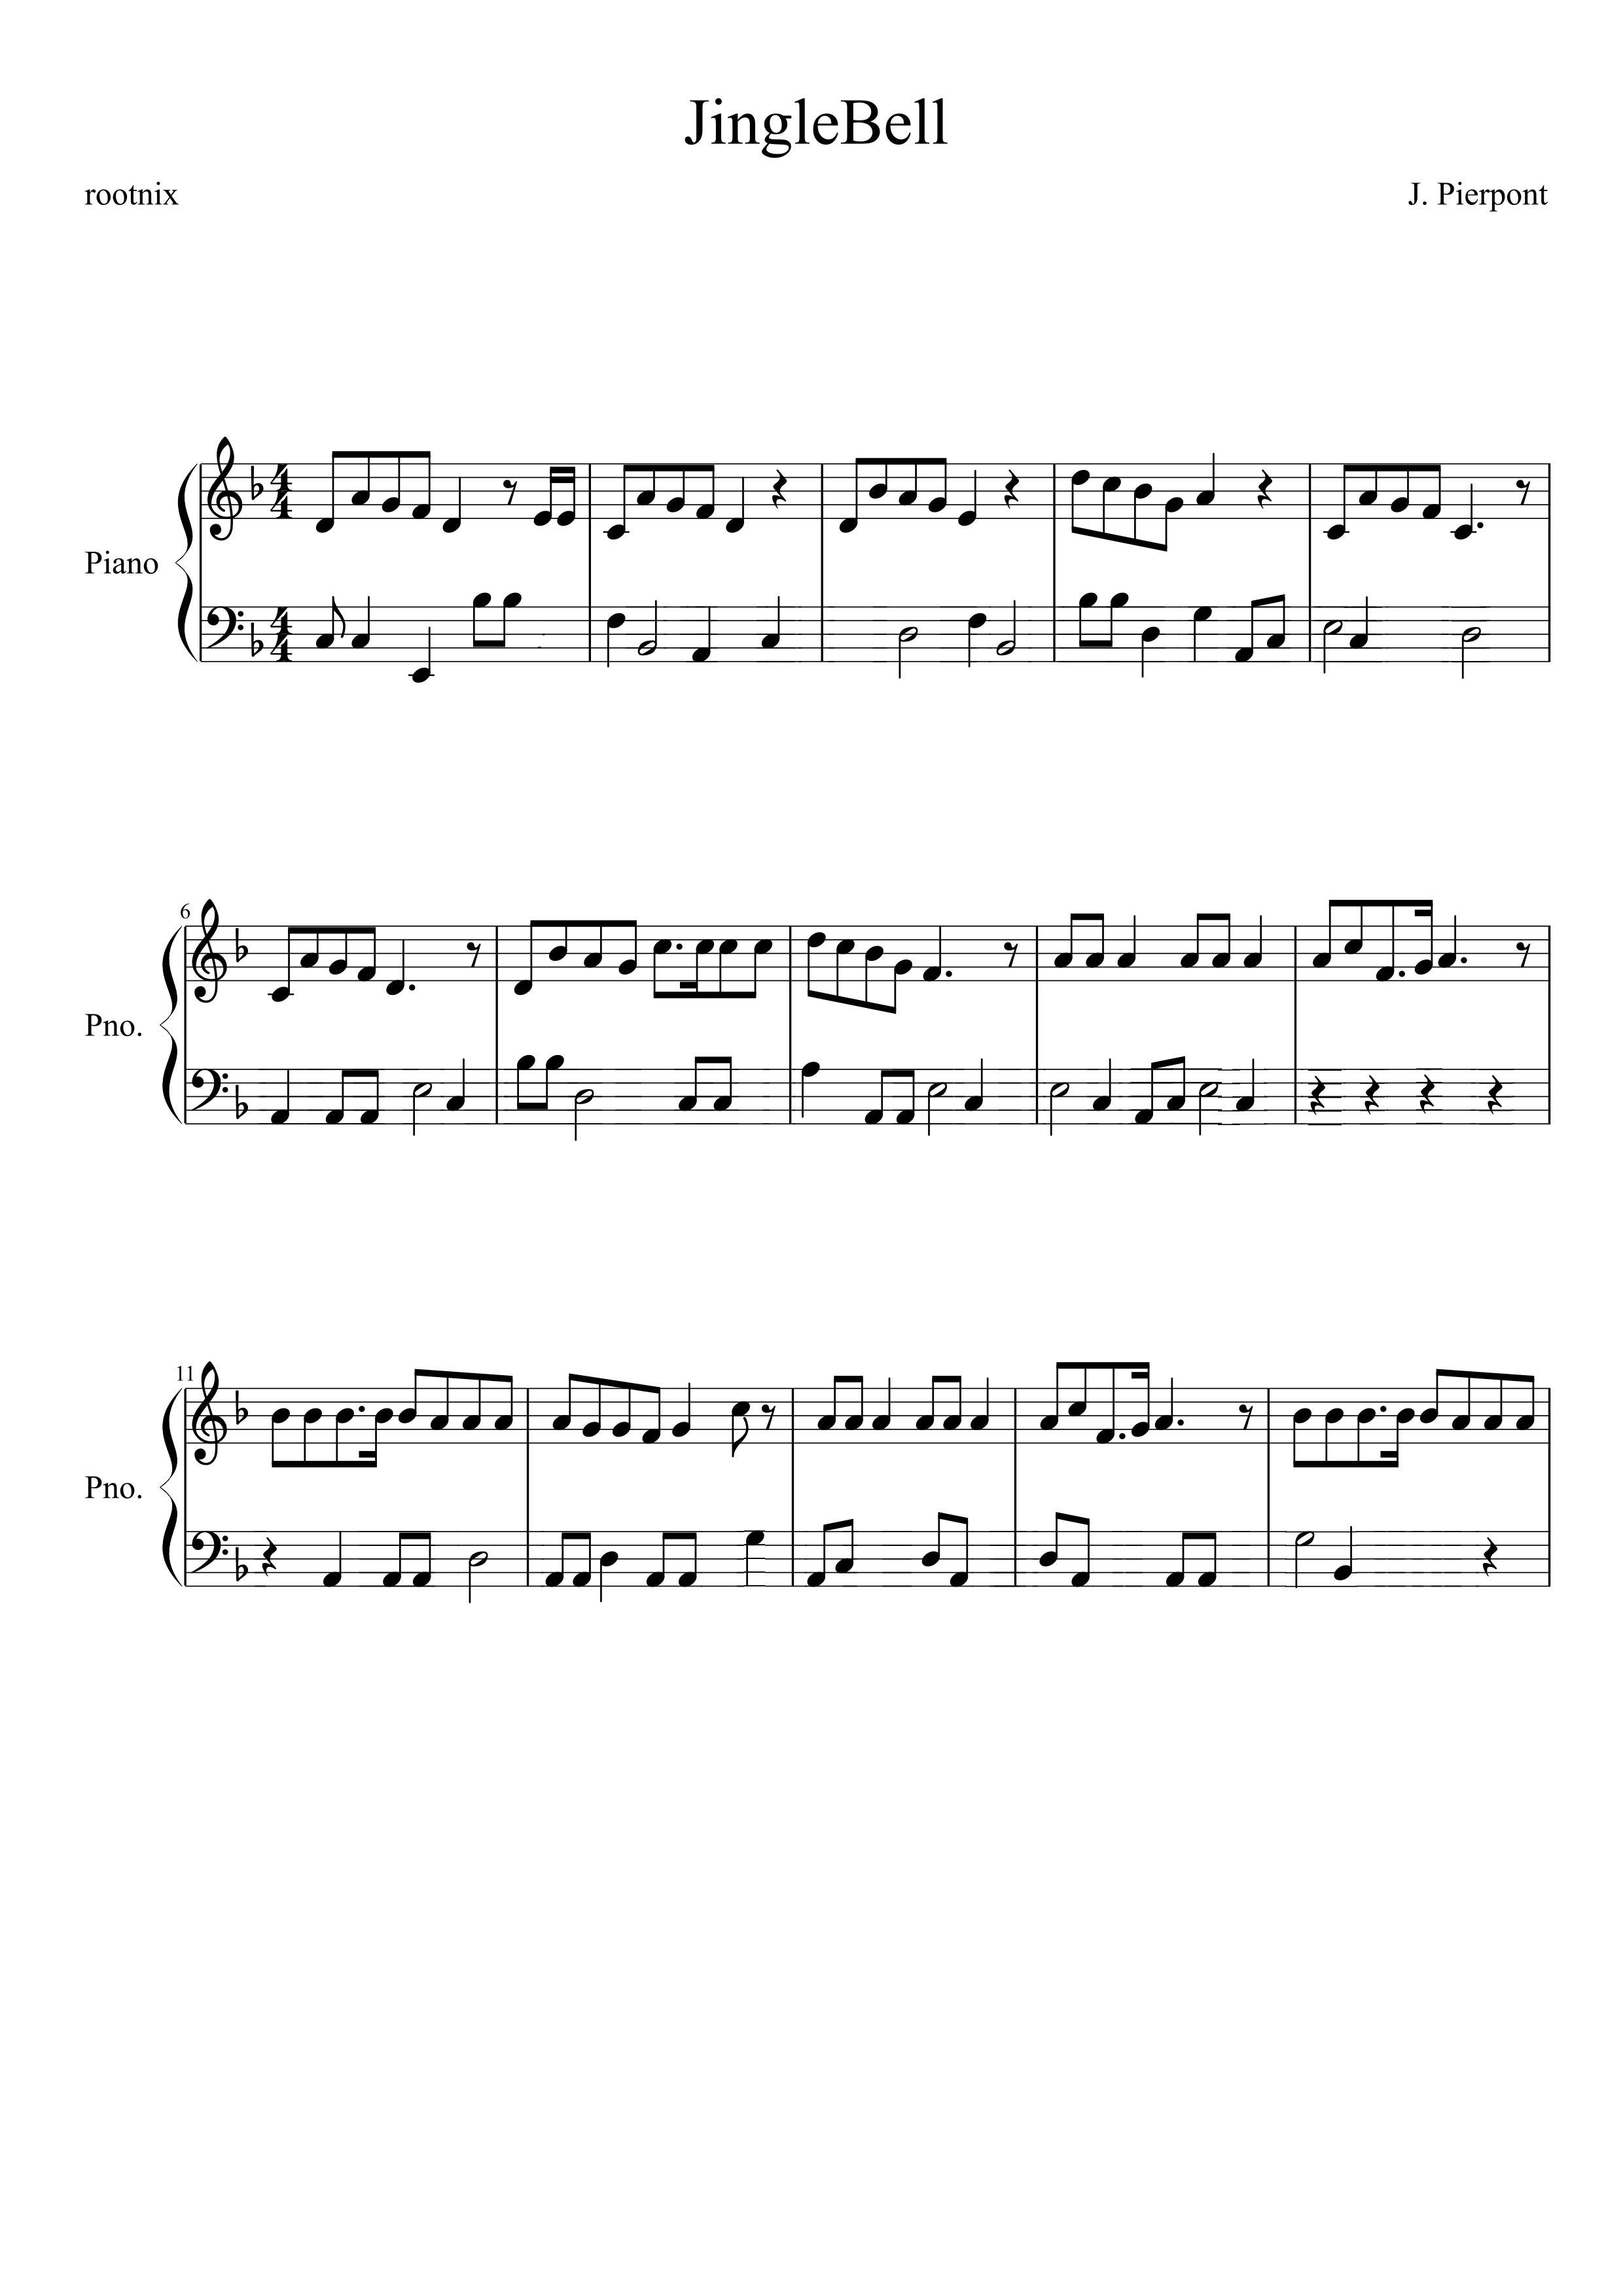 JingleBell piano score with random bass notes